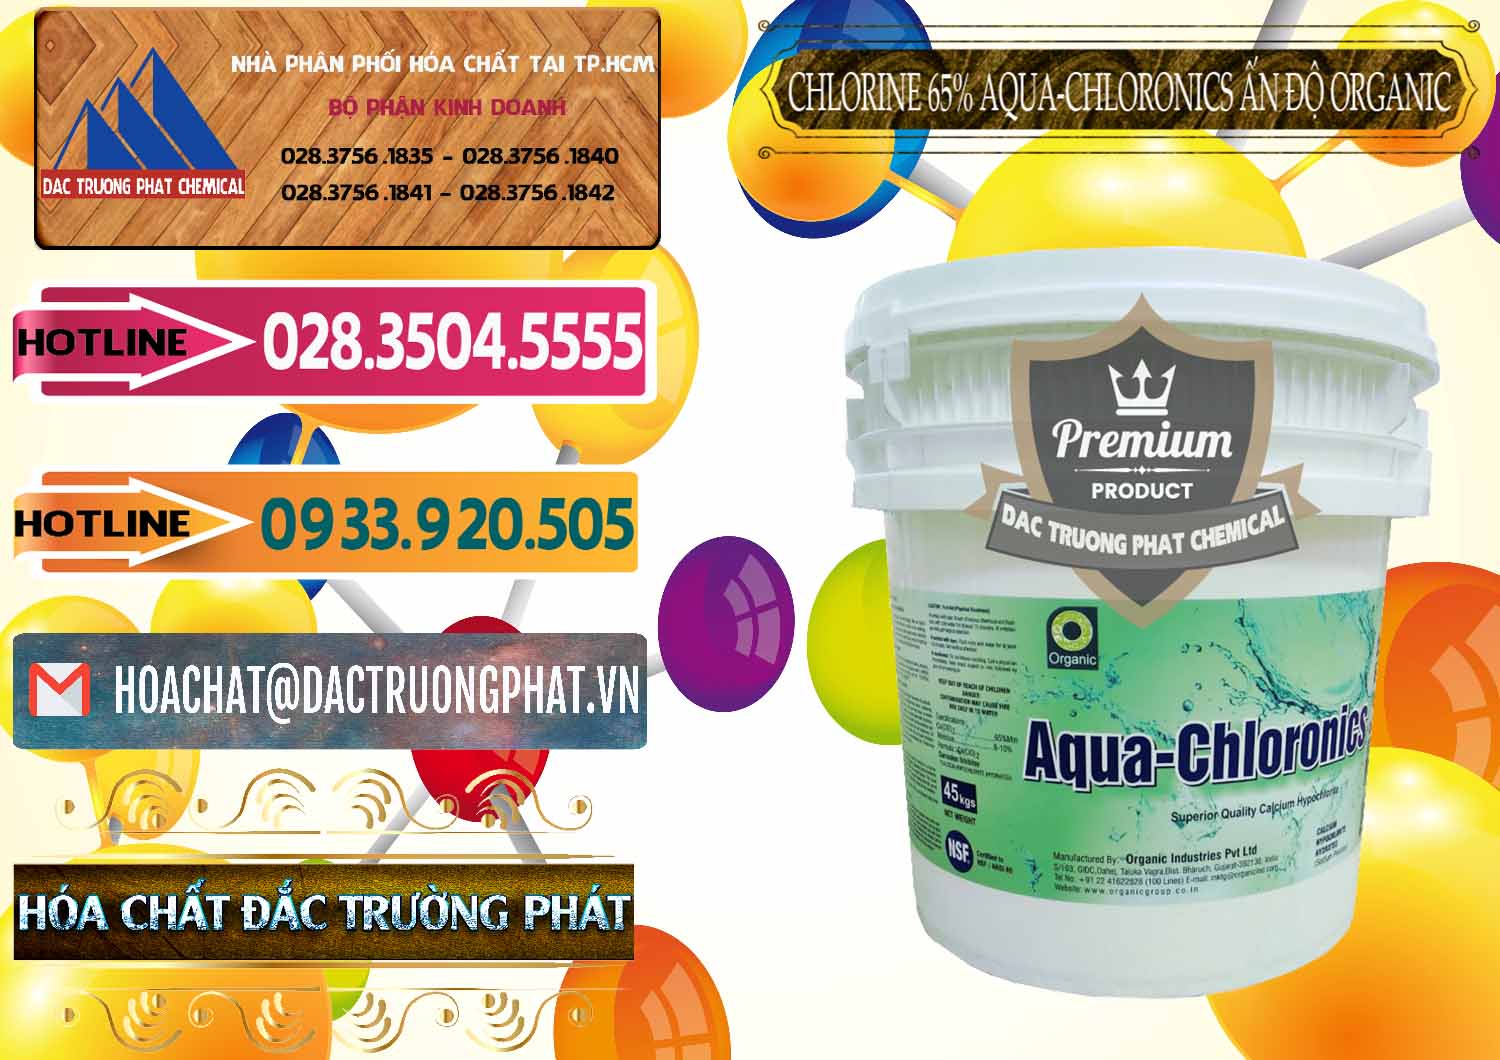 Đơn vị cung cấp và bán Chlorine – Clorin 65% Aqua-Chloronics Ấn Độ Organic India - 0210 - Nơi chuyên bán - cung cấp hóa chất tại TP.HCM - dactruongphat.vn